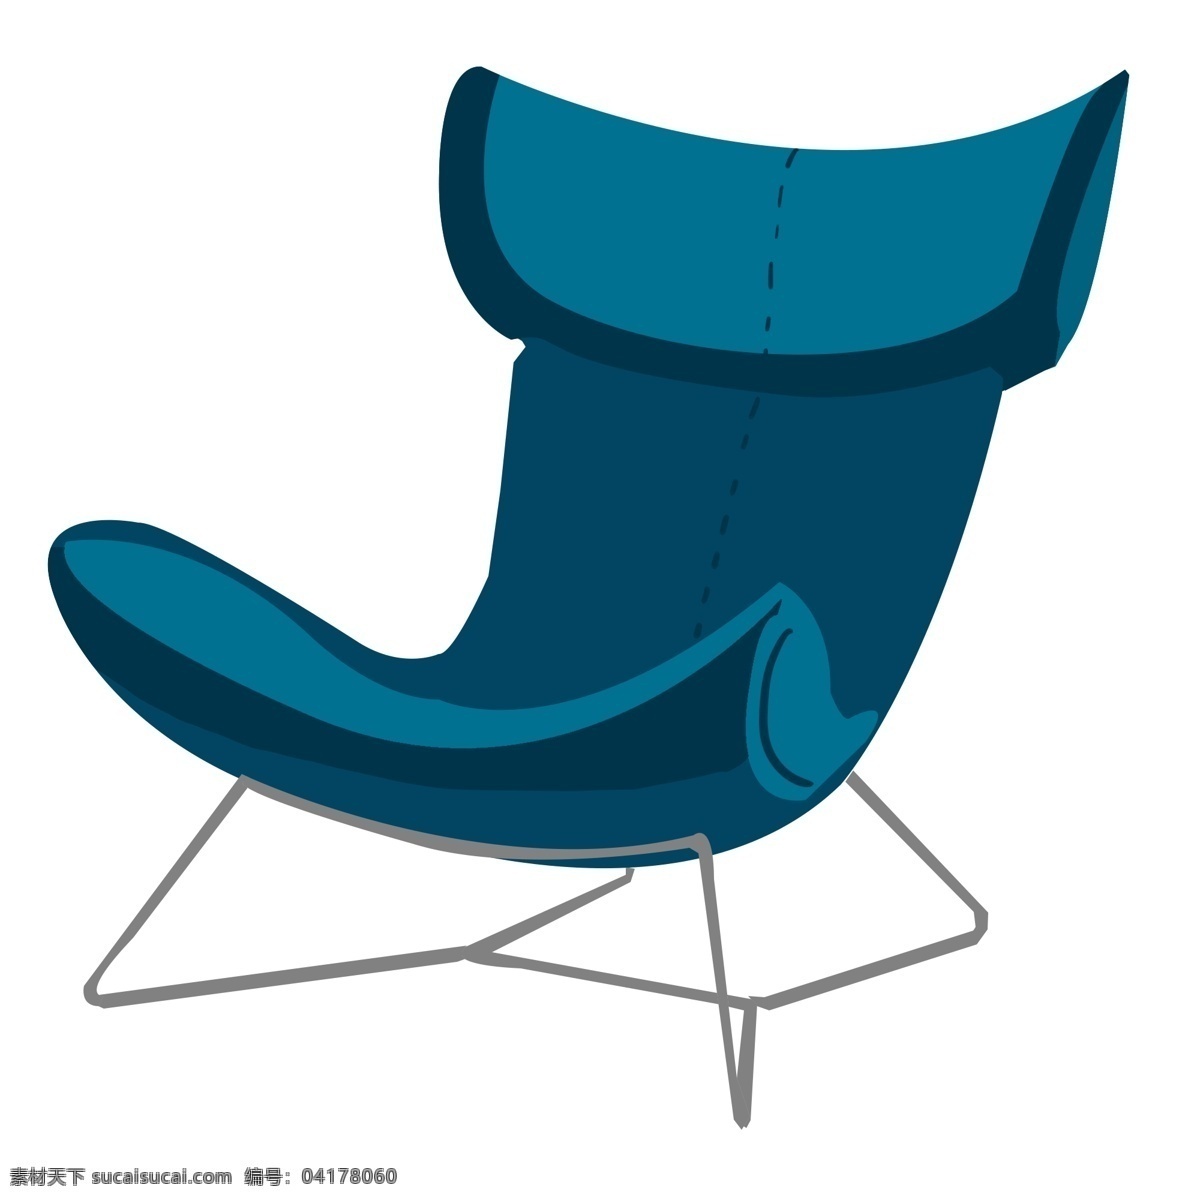 办公 椅子 装饰 插画 蓝色的椅子 办公椅子 漂亮的椅子 家具椅子 创意椅子 立体椅子 卡通椅子